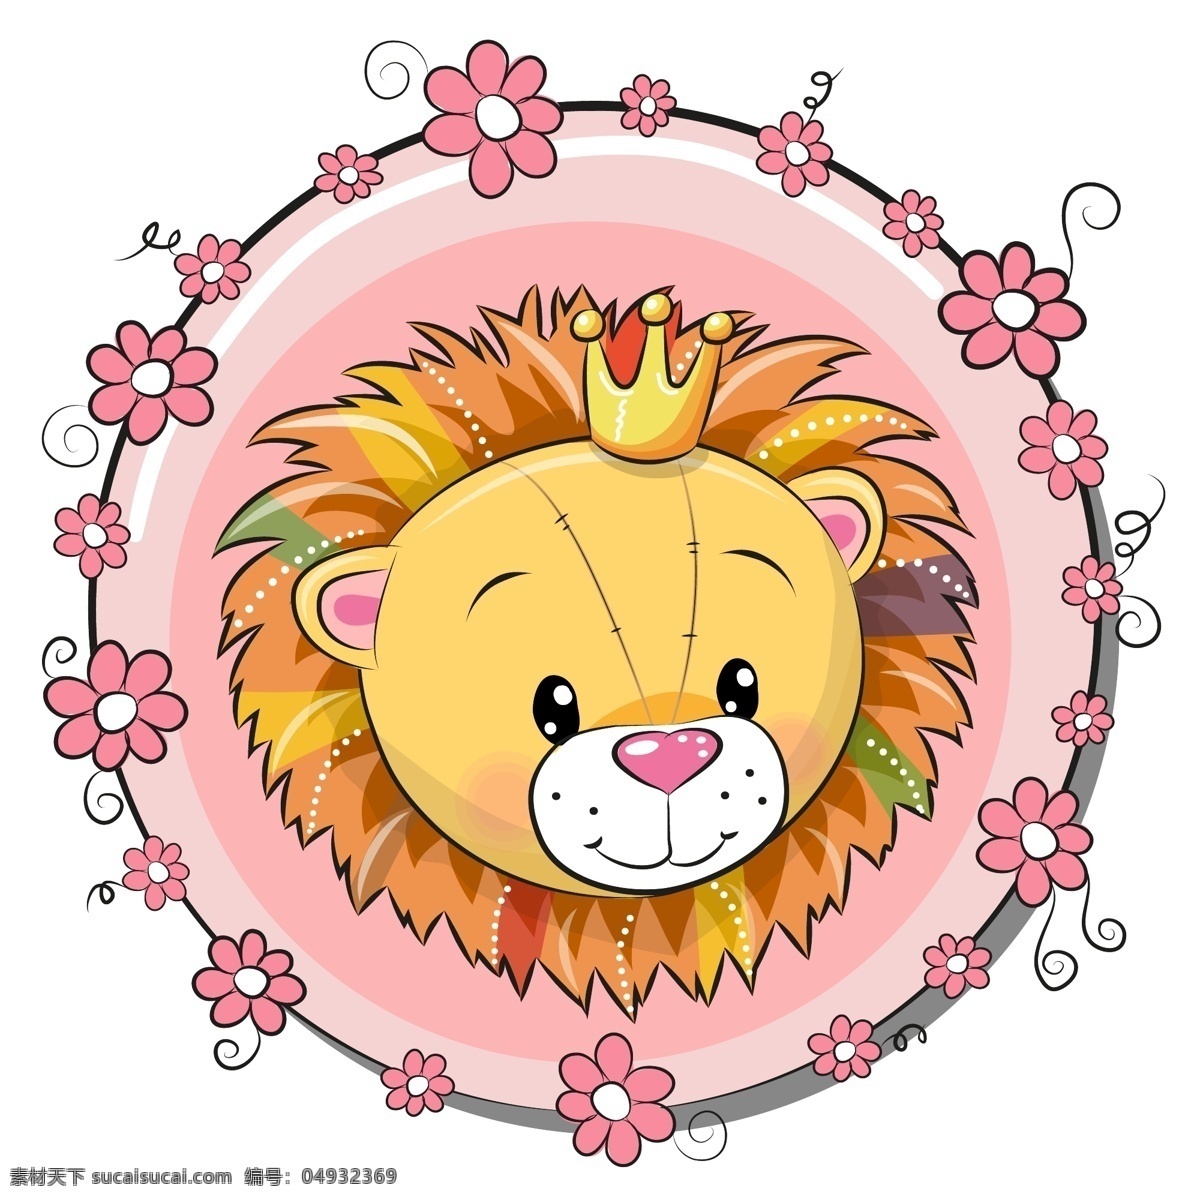 卡通狮子 狮子 卡通 可爱 动物 幼儿园素材 卡通动物 卡通设计